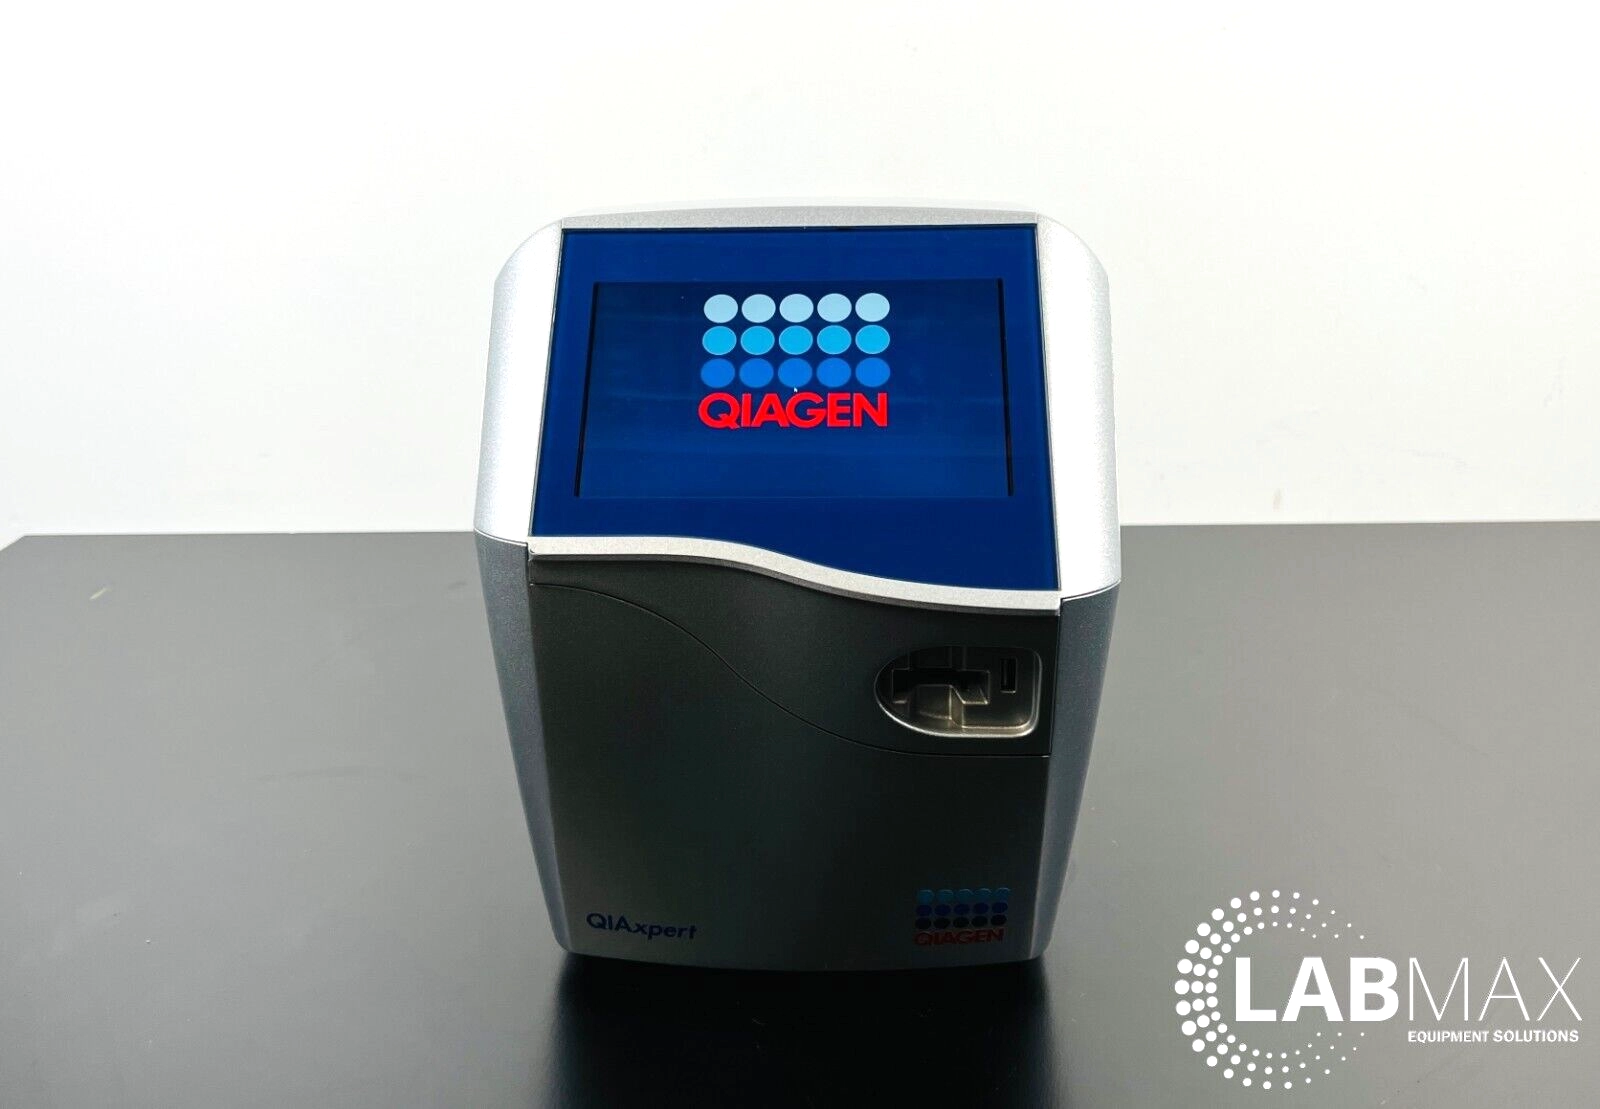 Qiagen QIAxpert Hi Speed Microfluidic UV/VIS Spect